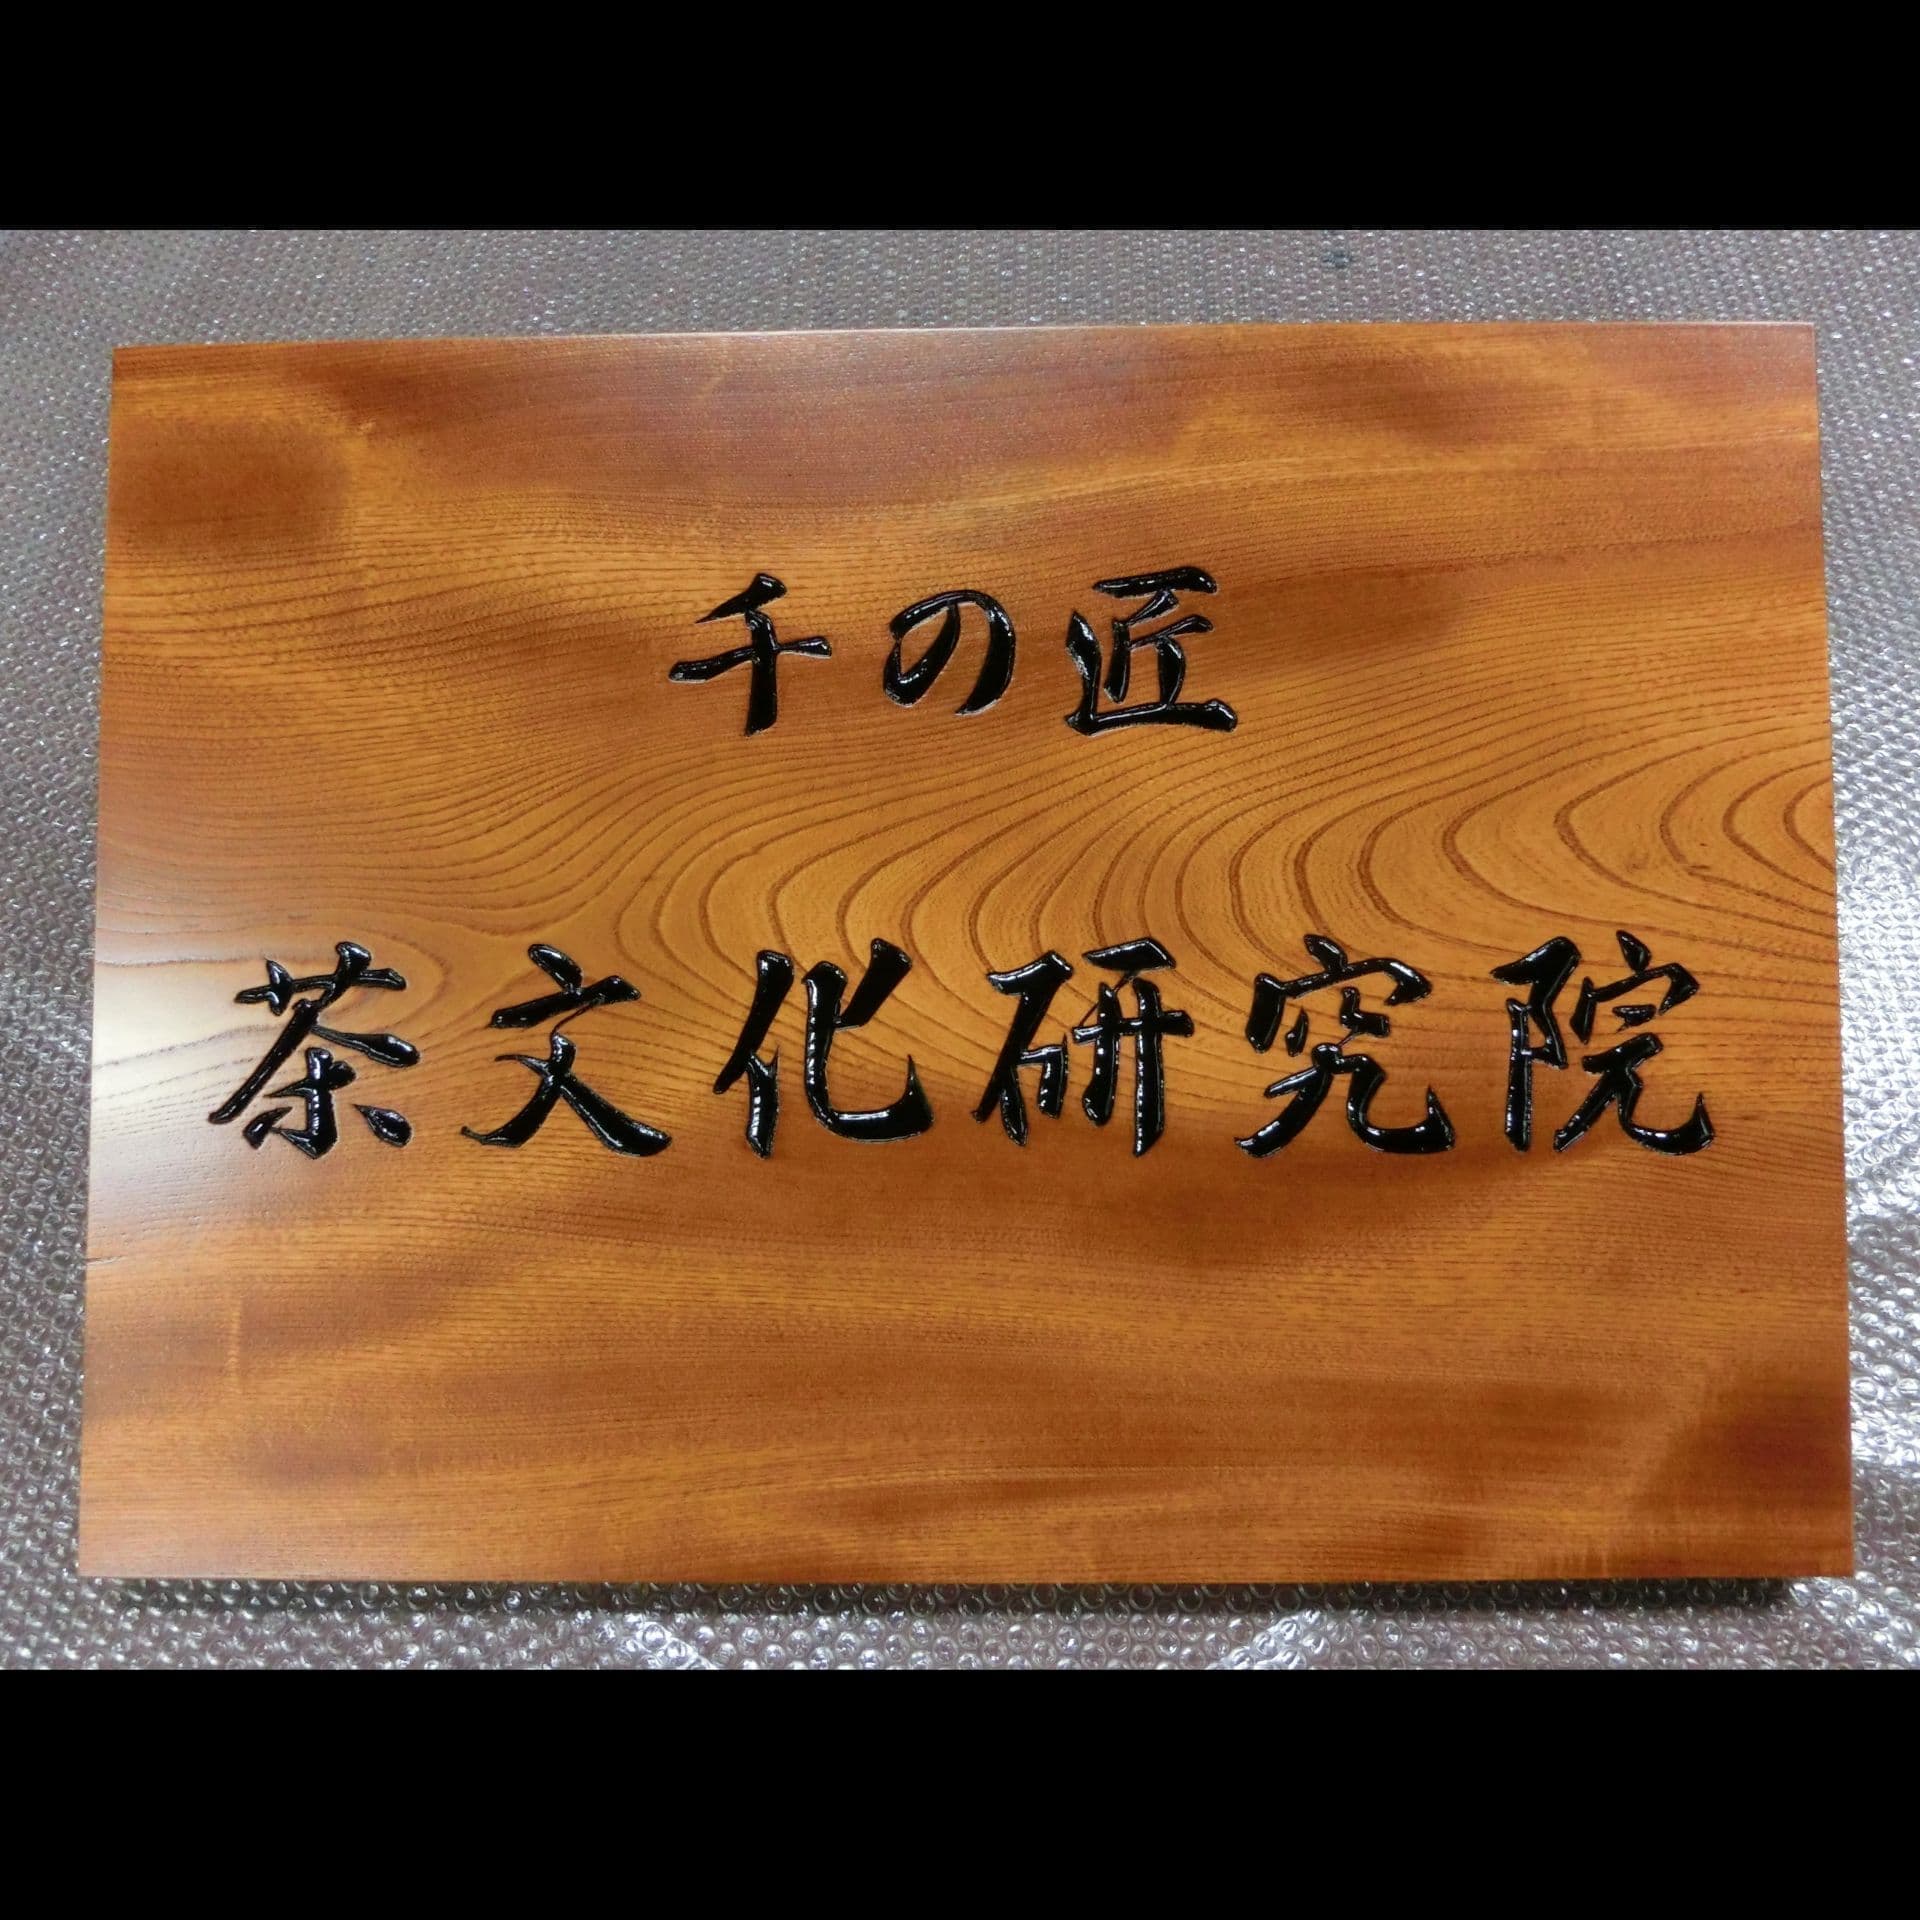 欅の木目が印象的な木の看板、銘板